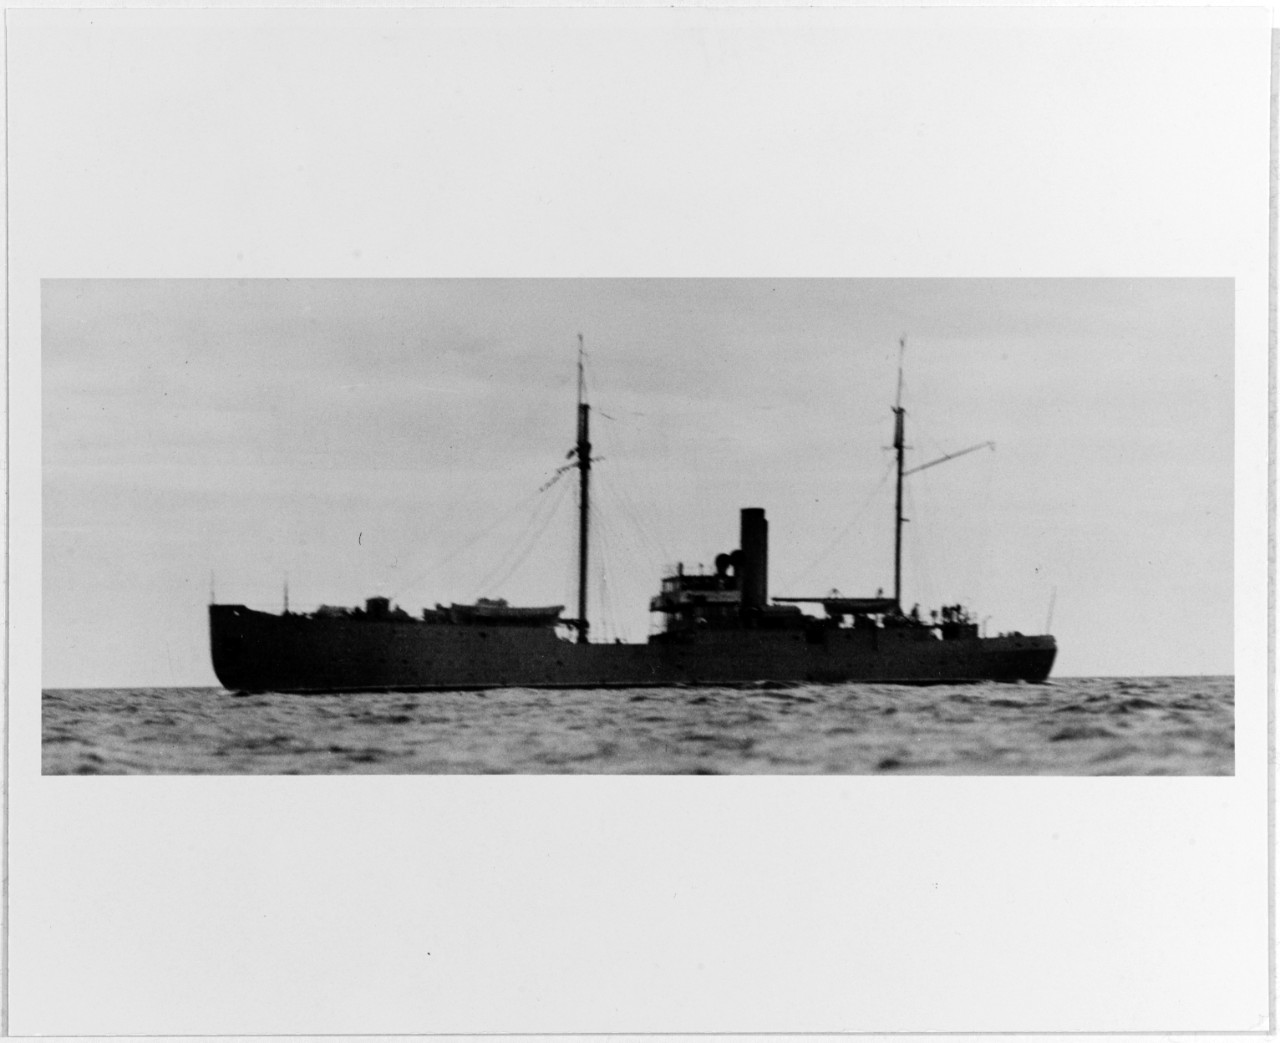 KURSANT (Soviet Training ship, 1912-circa 1945)